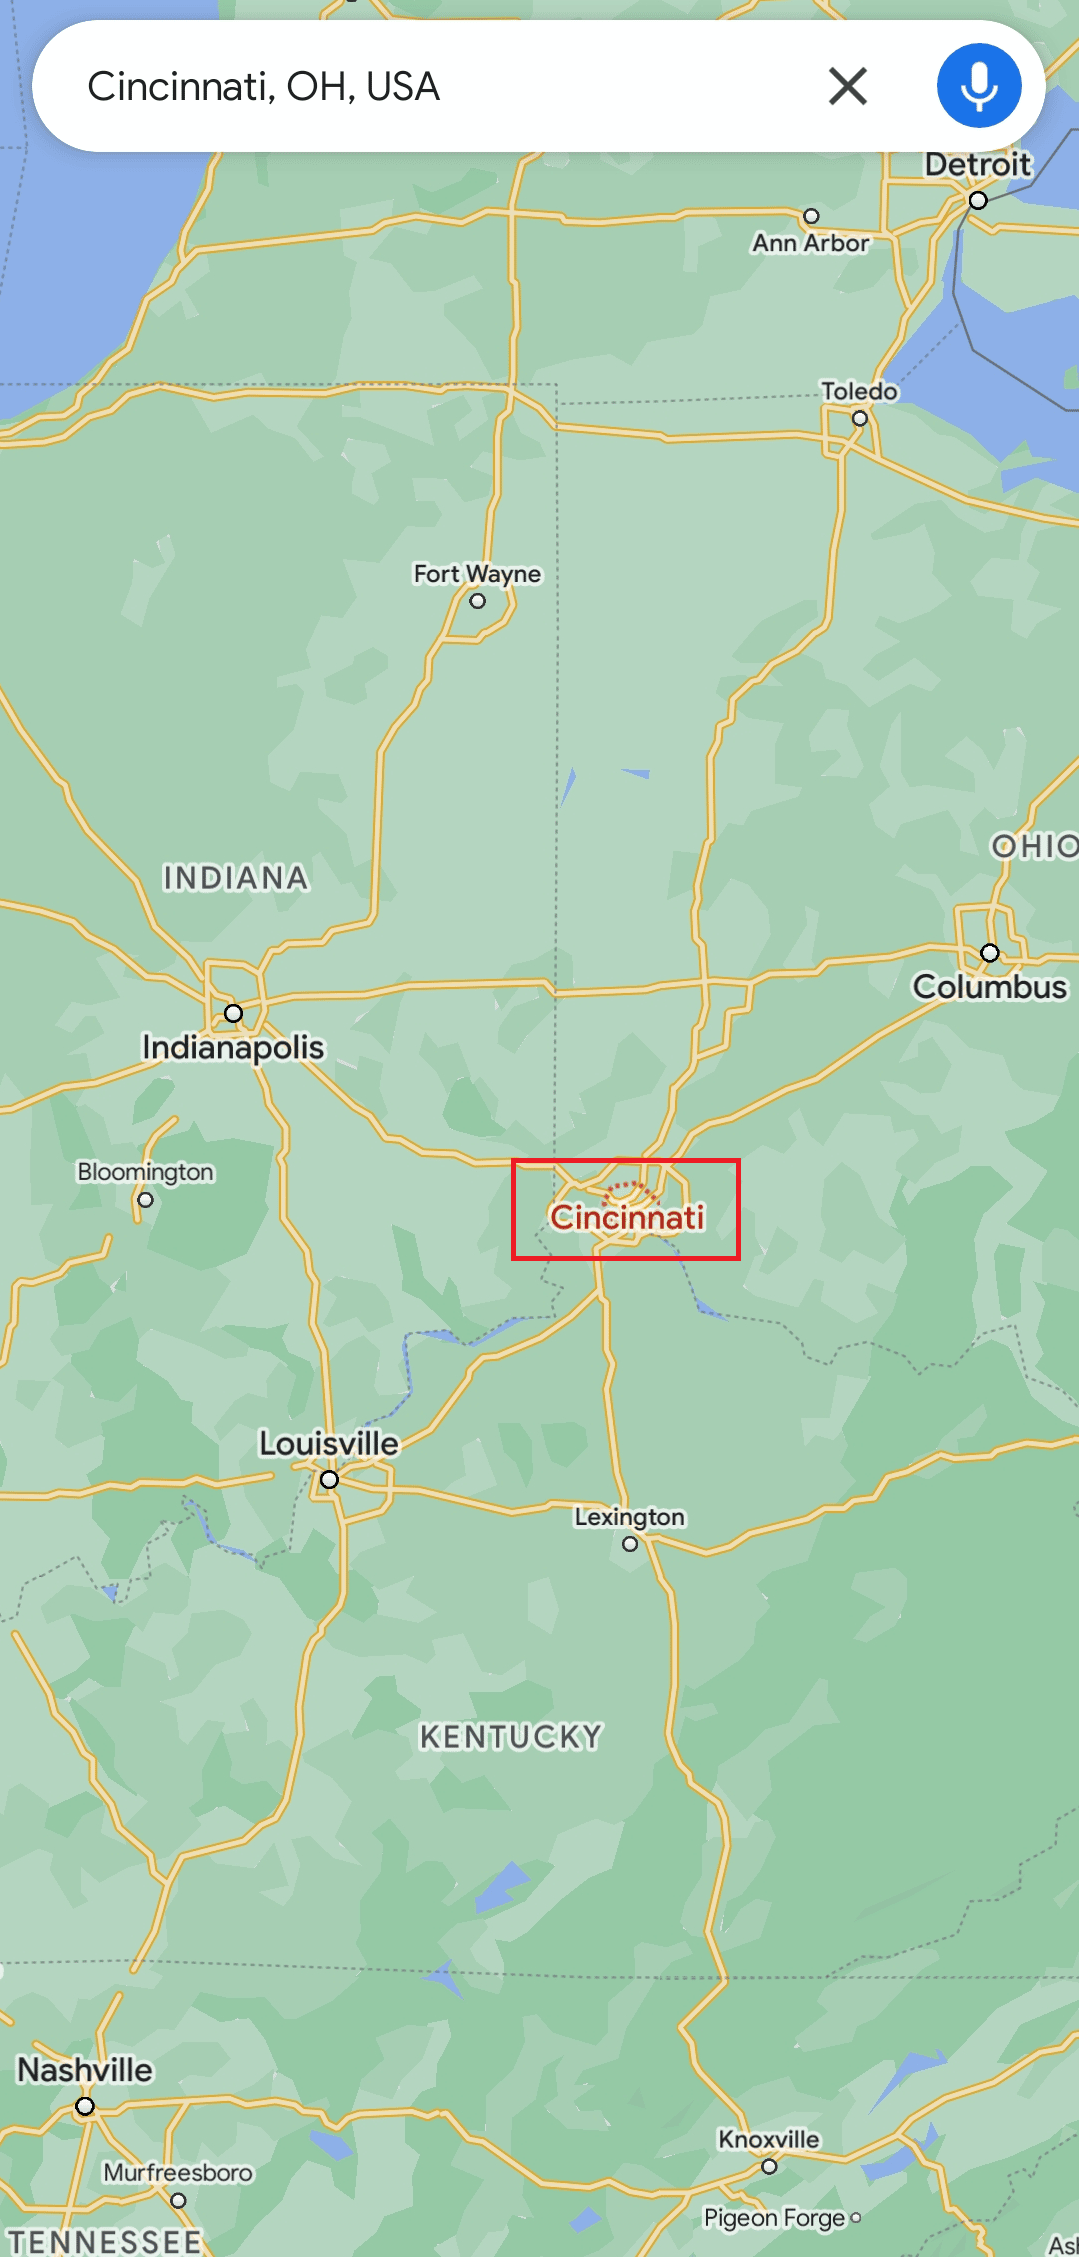 Trova Cincinnati sulla mappa | a metà strada tra due posti